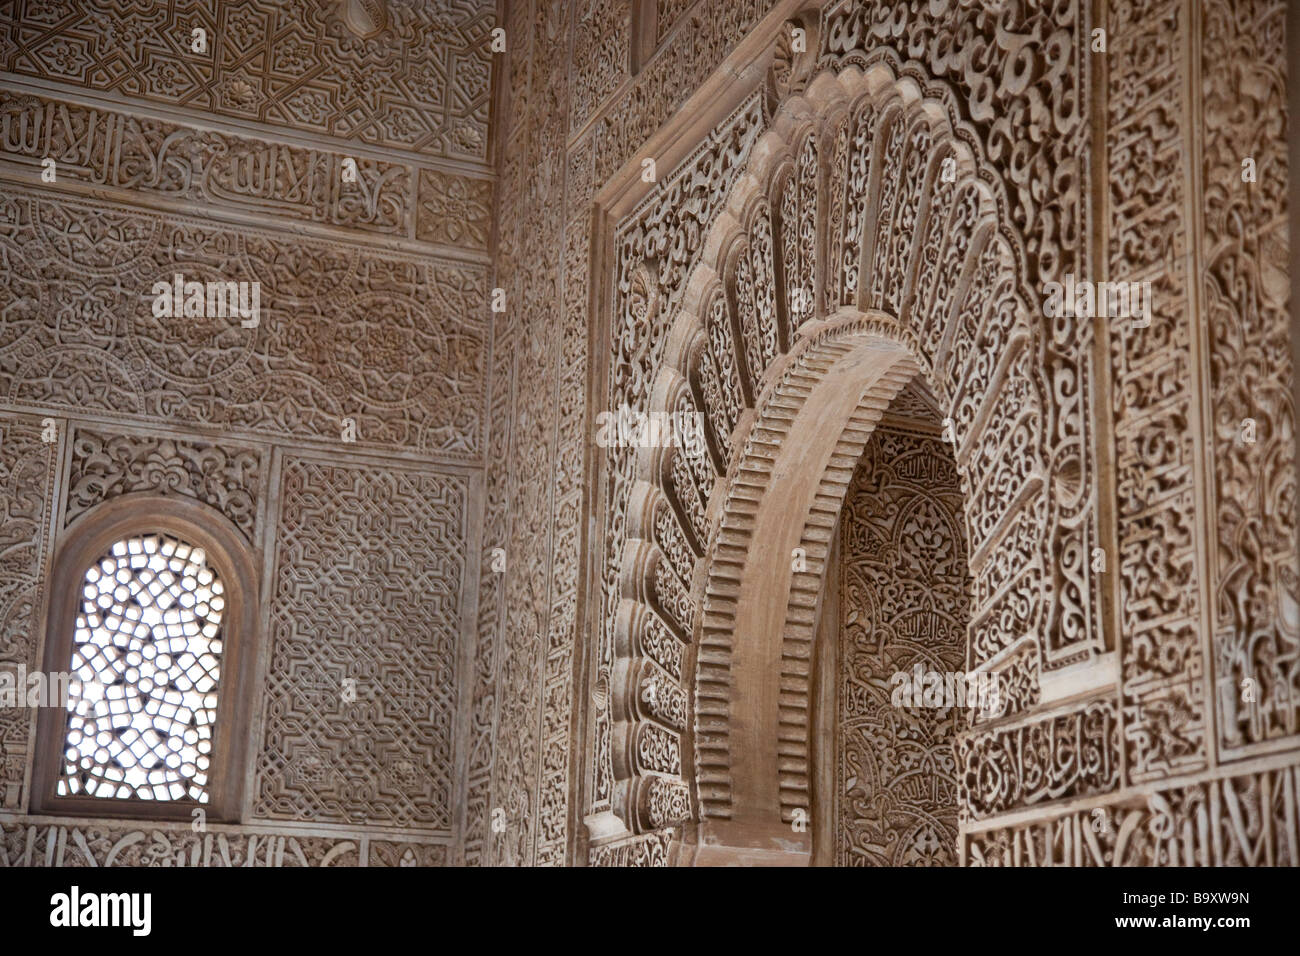 Détail architectural islamique dans le Mexuar l'intérieur du Palais Nasrides de l'Alhambra à Grenade Espagne Banque D'Images